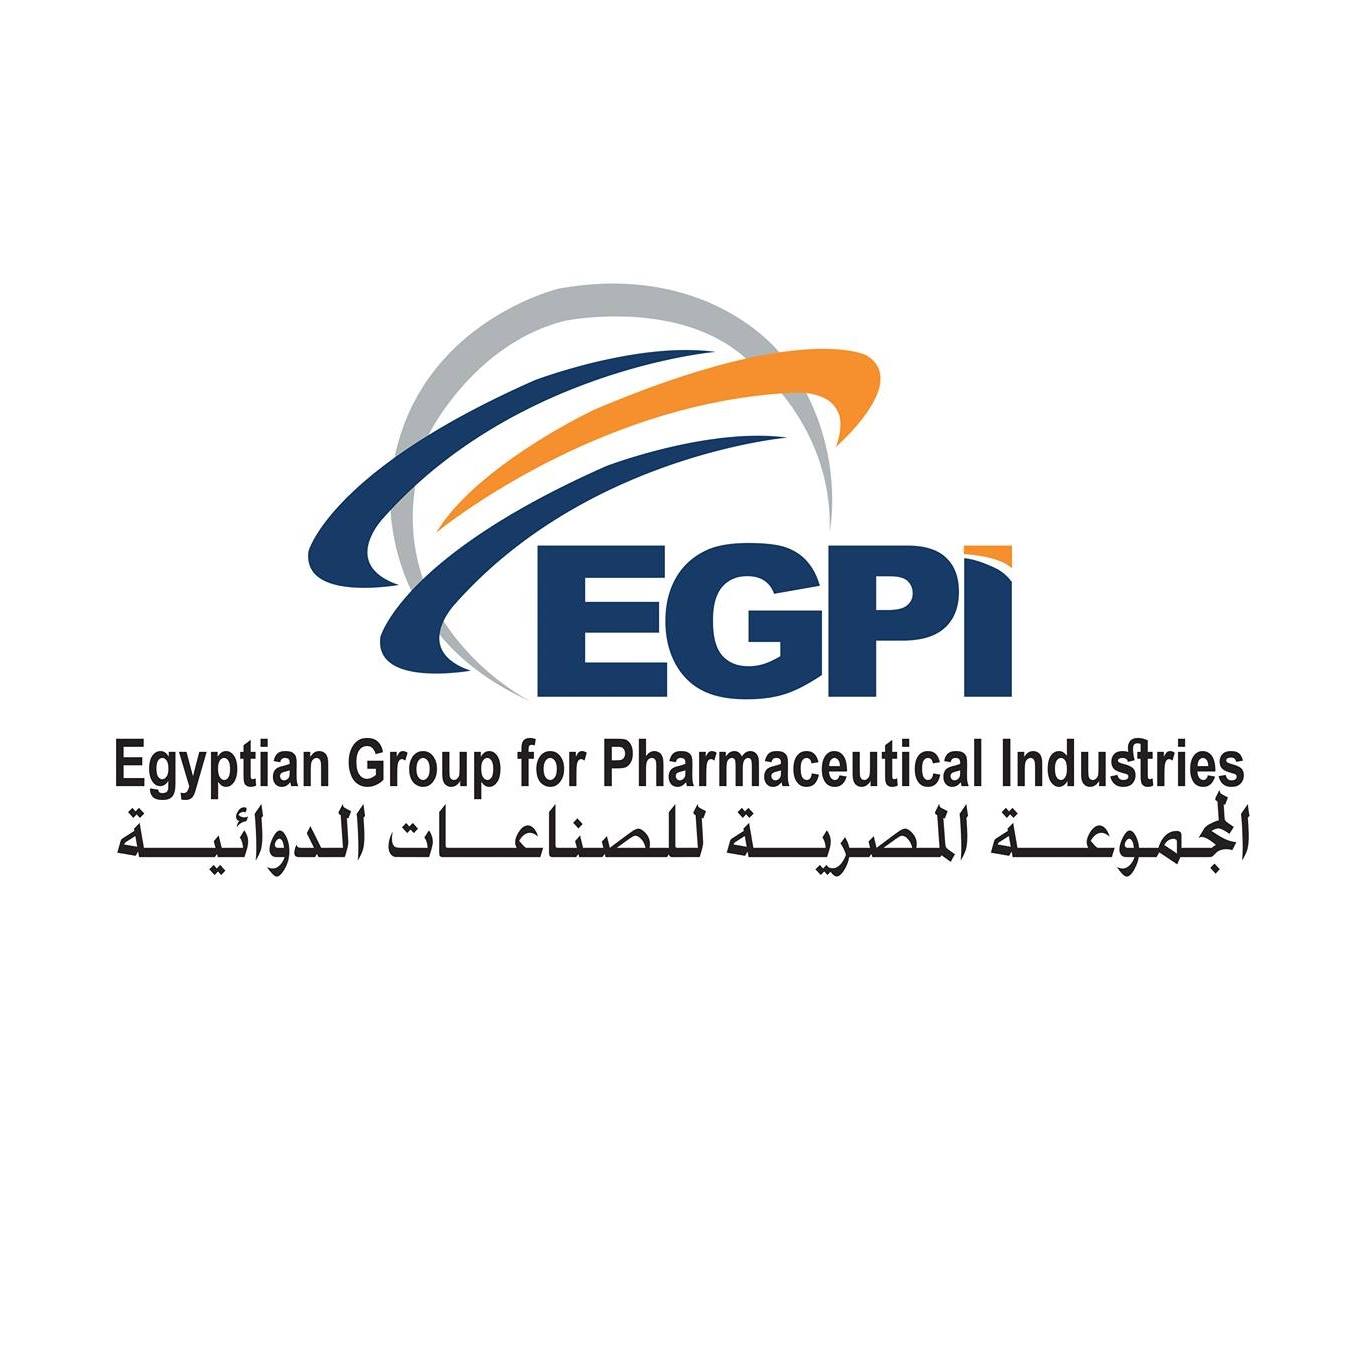 Egyptian group for pharmaceutical industries ( EGPI )